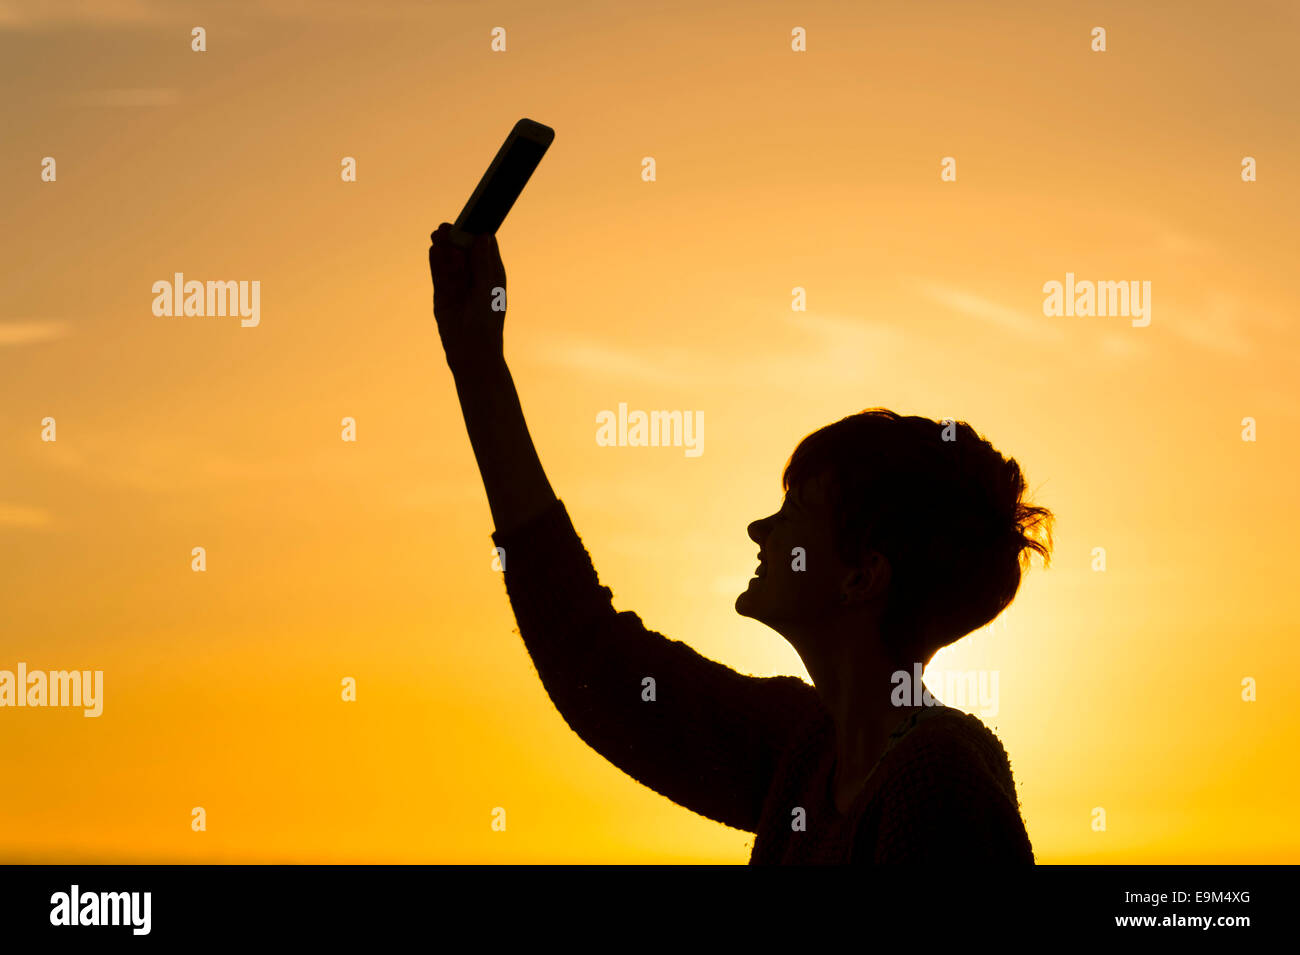 Una silueta chica posee un teléfono móvil en el aire para tratar de recibir una señal de datos. Foto de stock